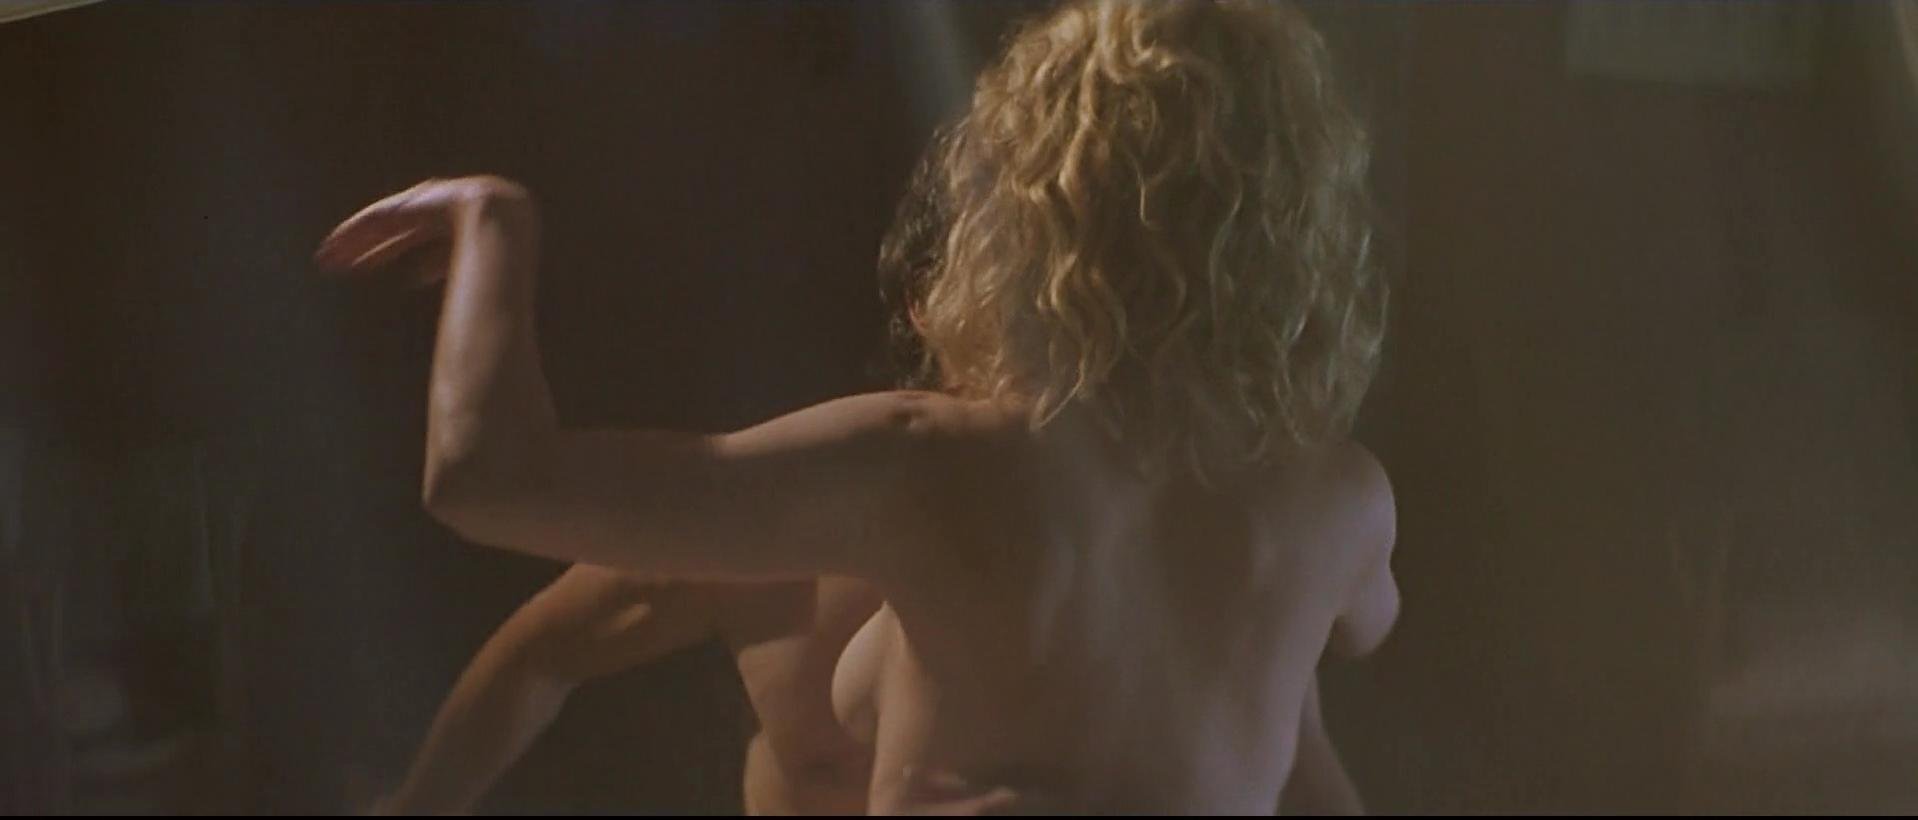 Nude Video Celebs Actress Kim Basinger